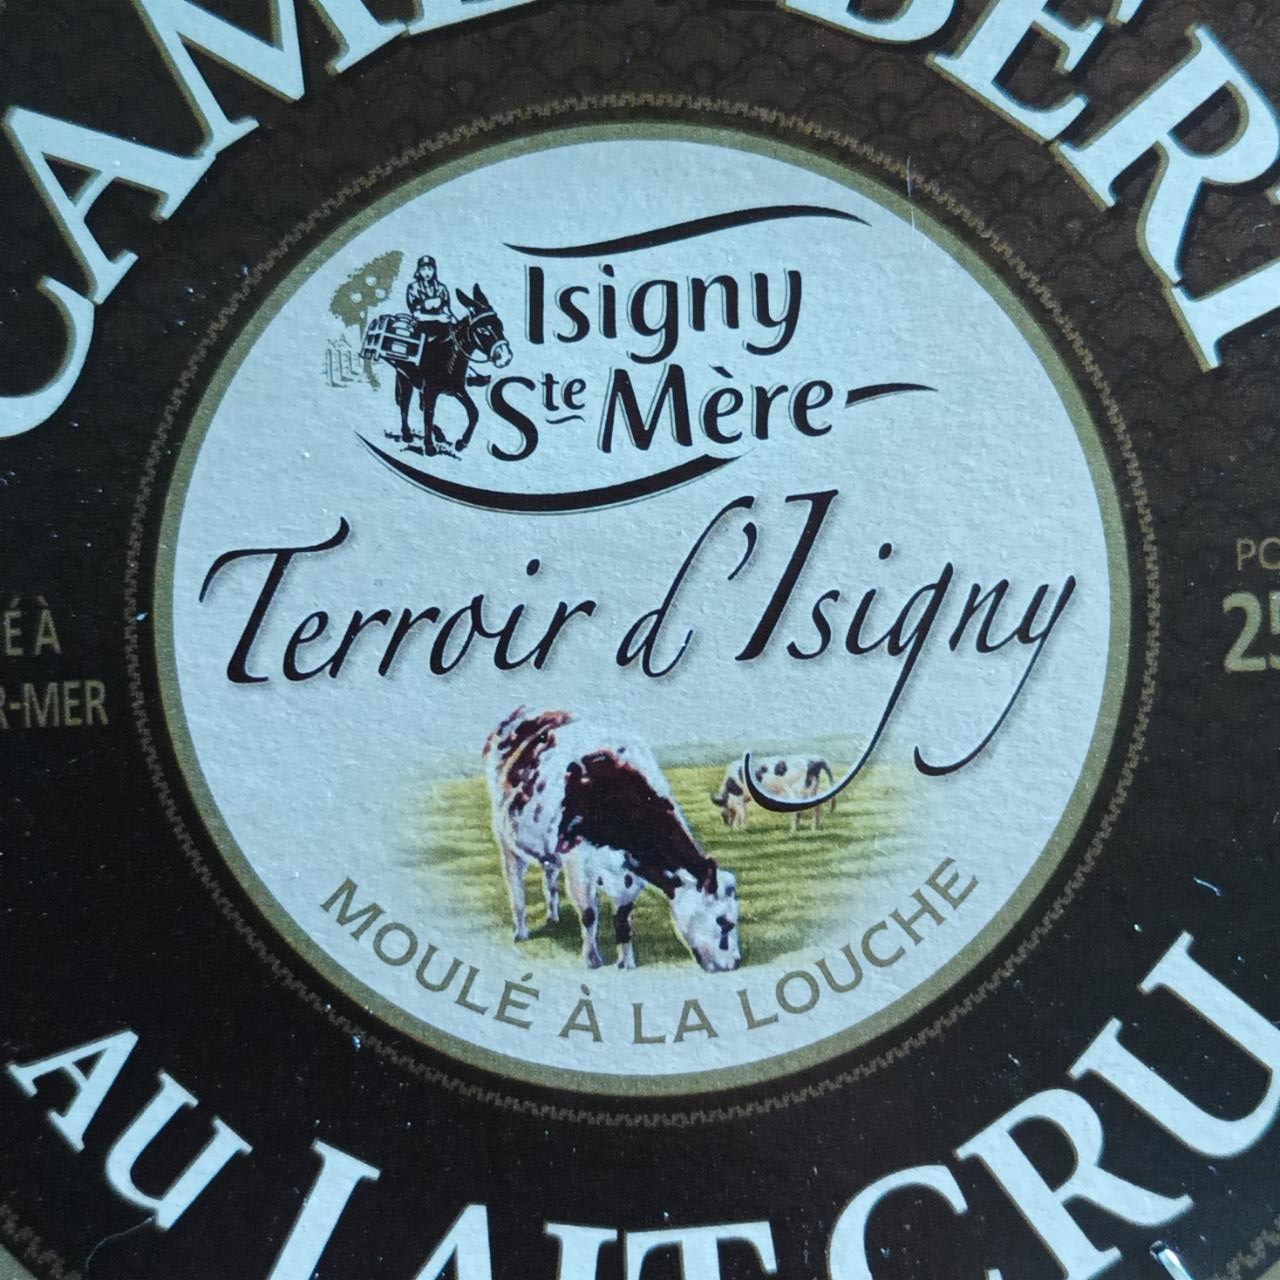 Fotografie - Camembert au lait cru moulé à la louche Isigny Ste Mère